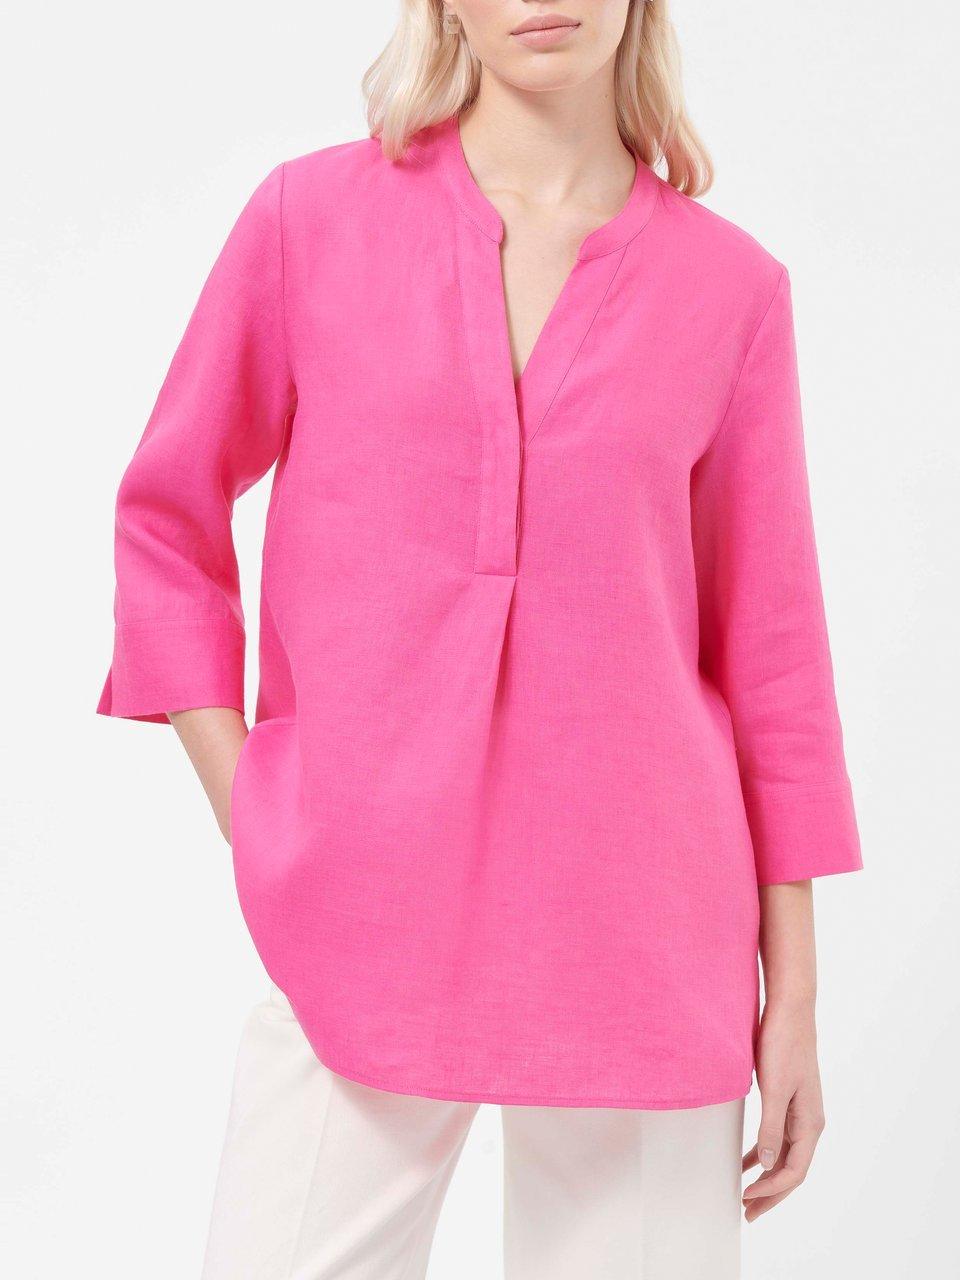 Pinke Damen Blusen im Peter kaufen Hahn Online-Shop